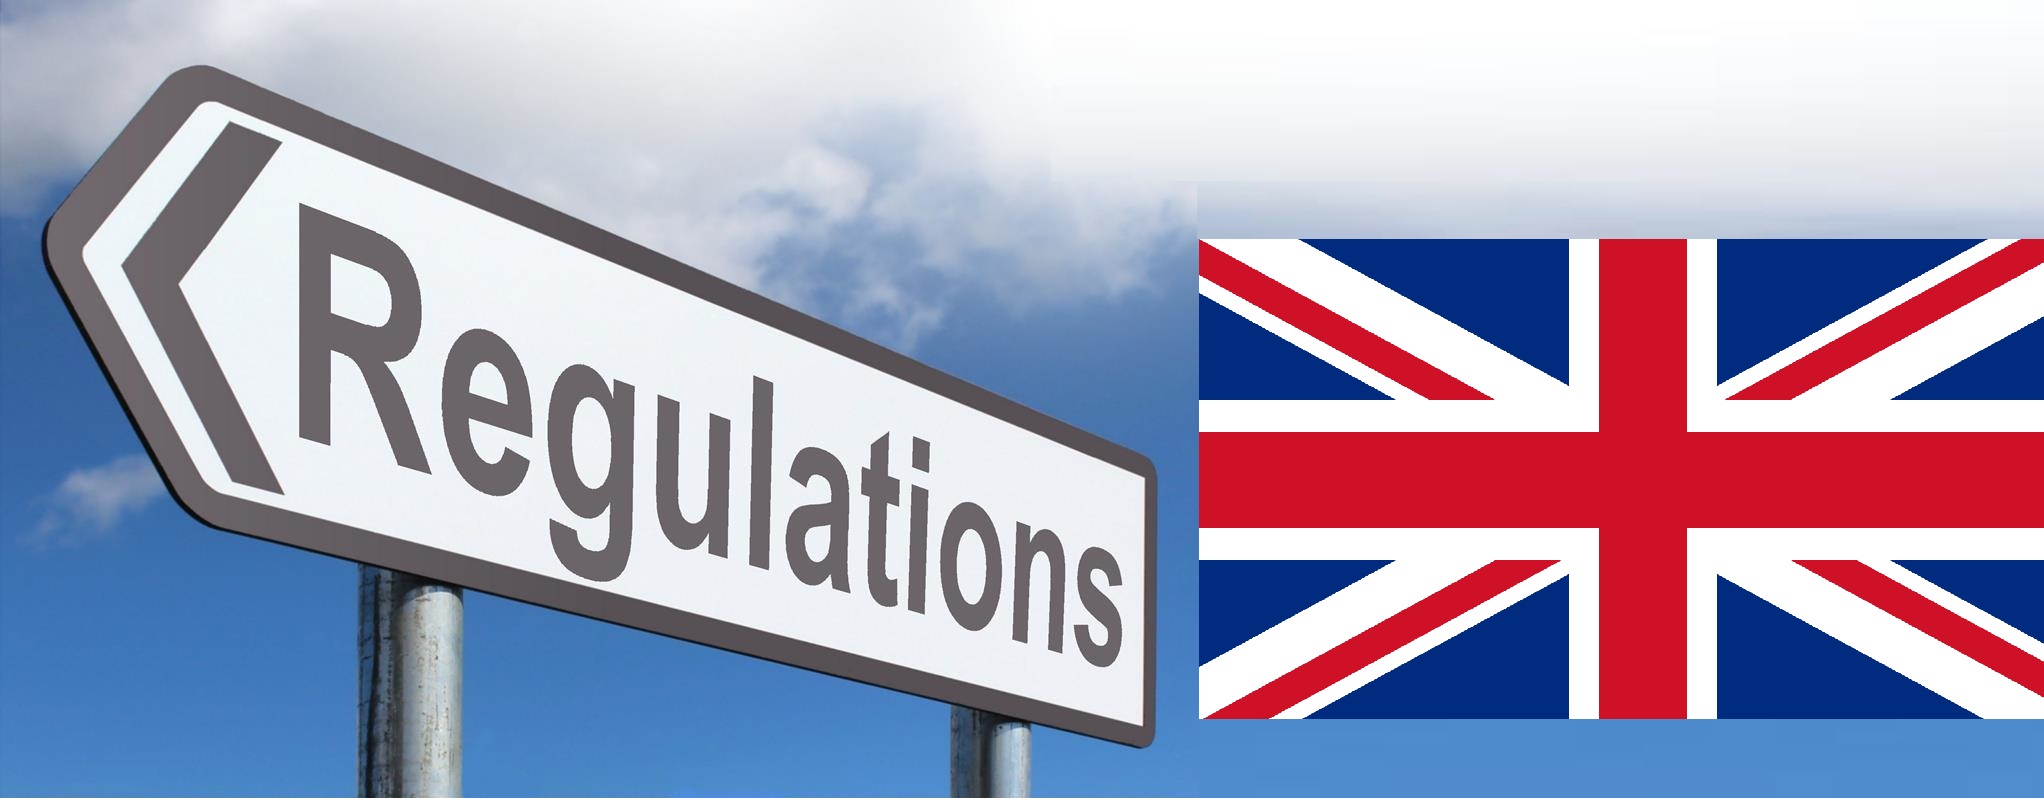 UK Flagge Regulations|Geld Casino||Regulations Großbritannien Online Casino|||||Ian Angus